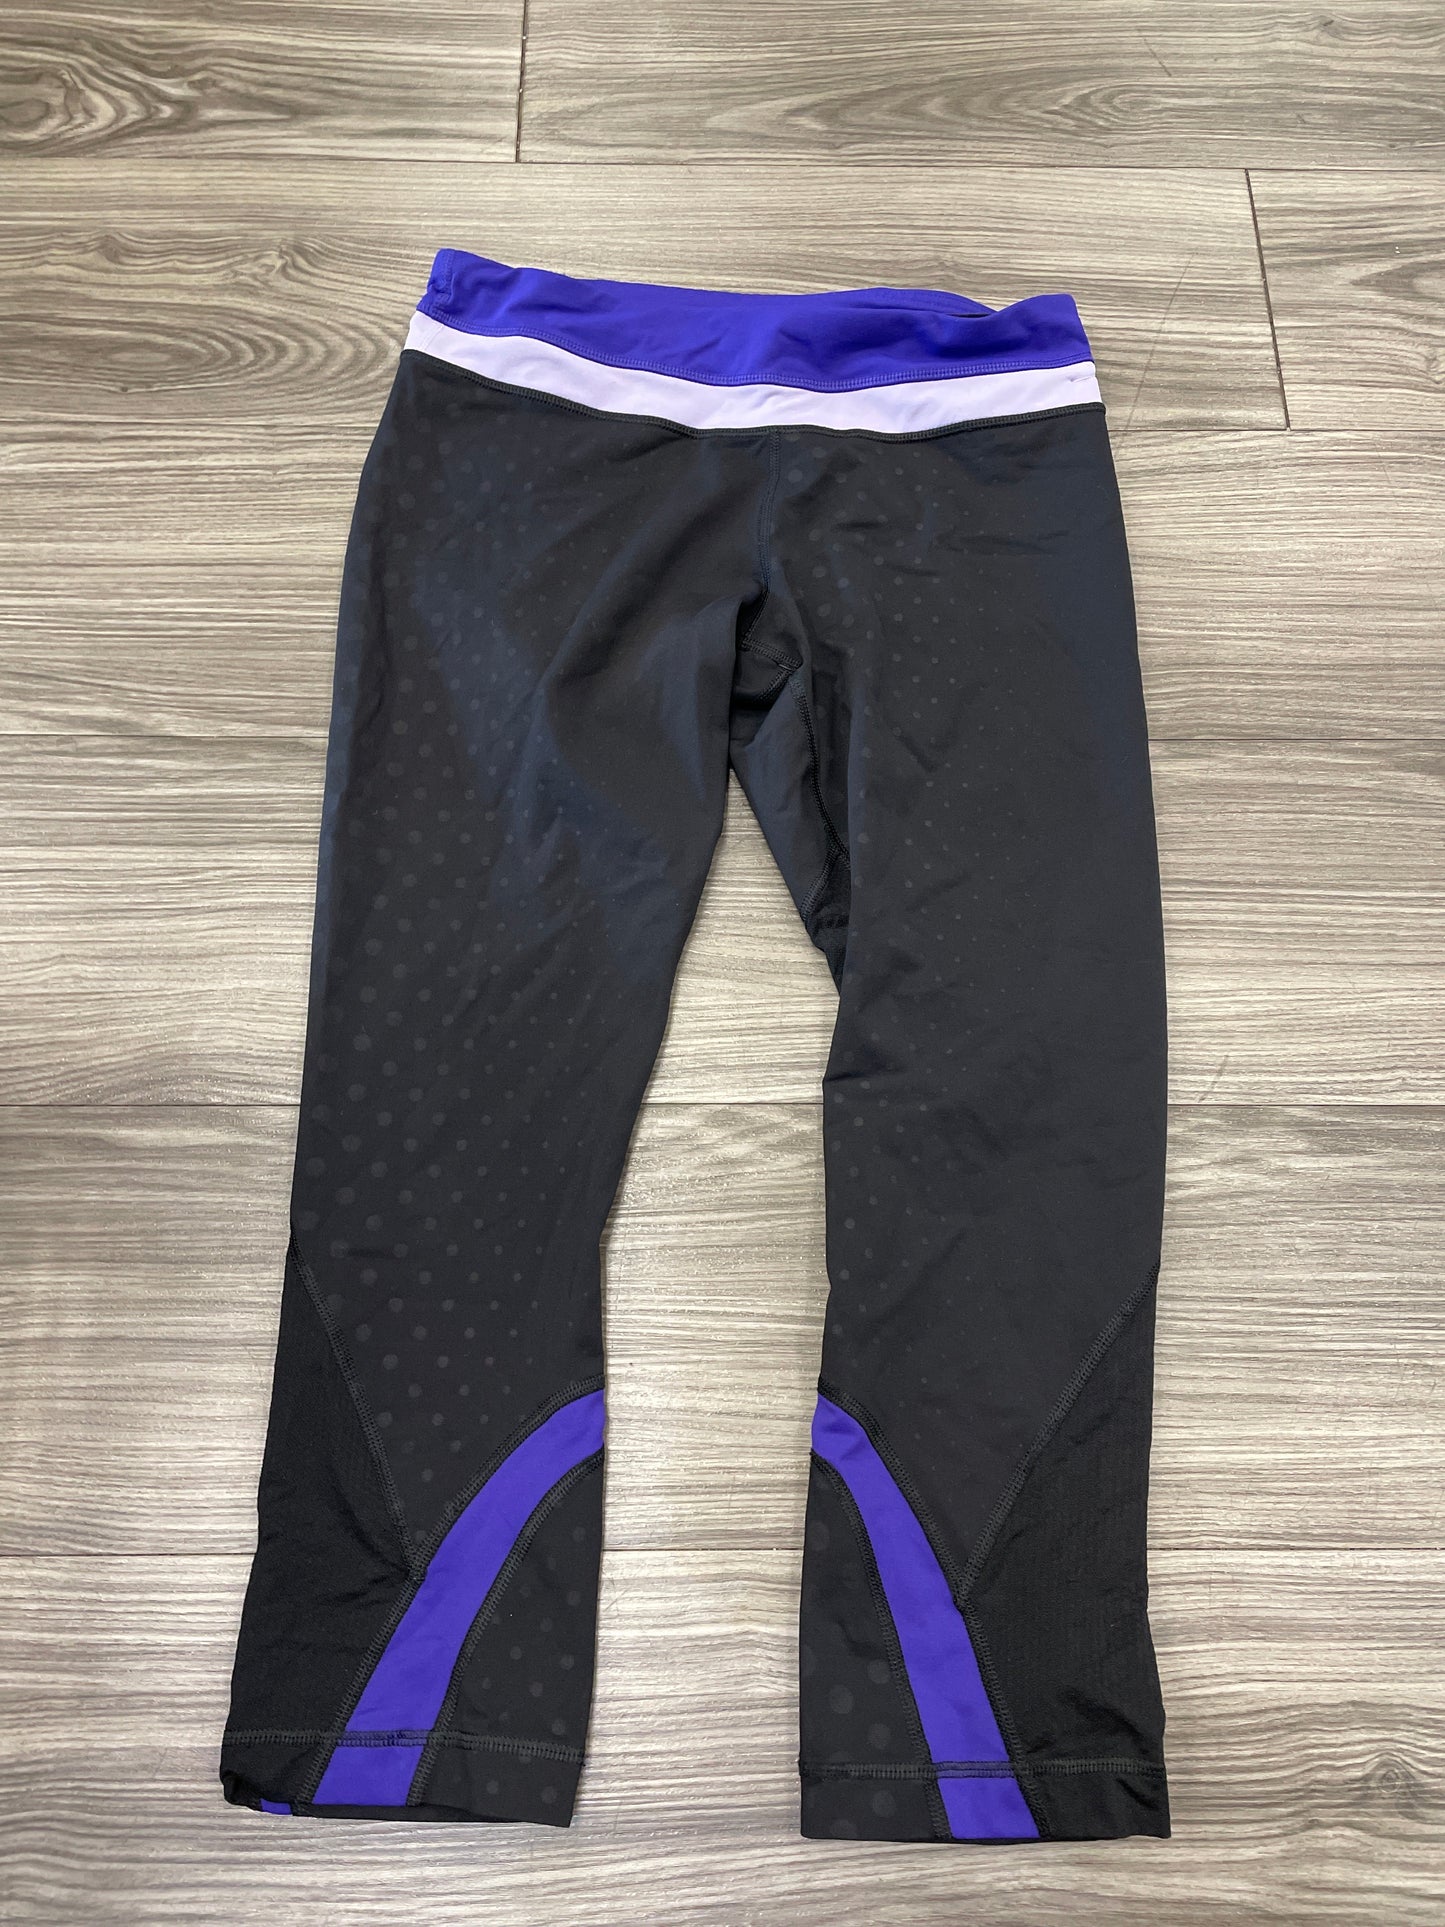 Black & Purple Athletic Leggings Lululemon, Size 8